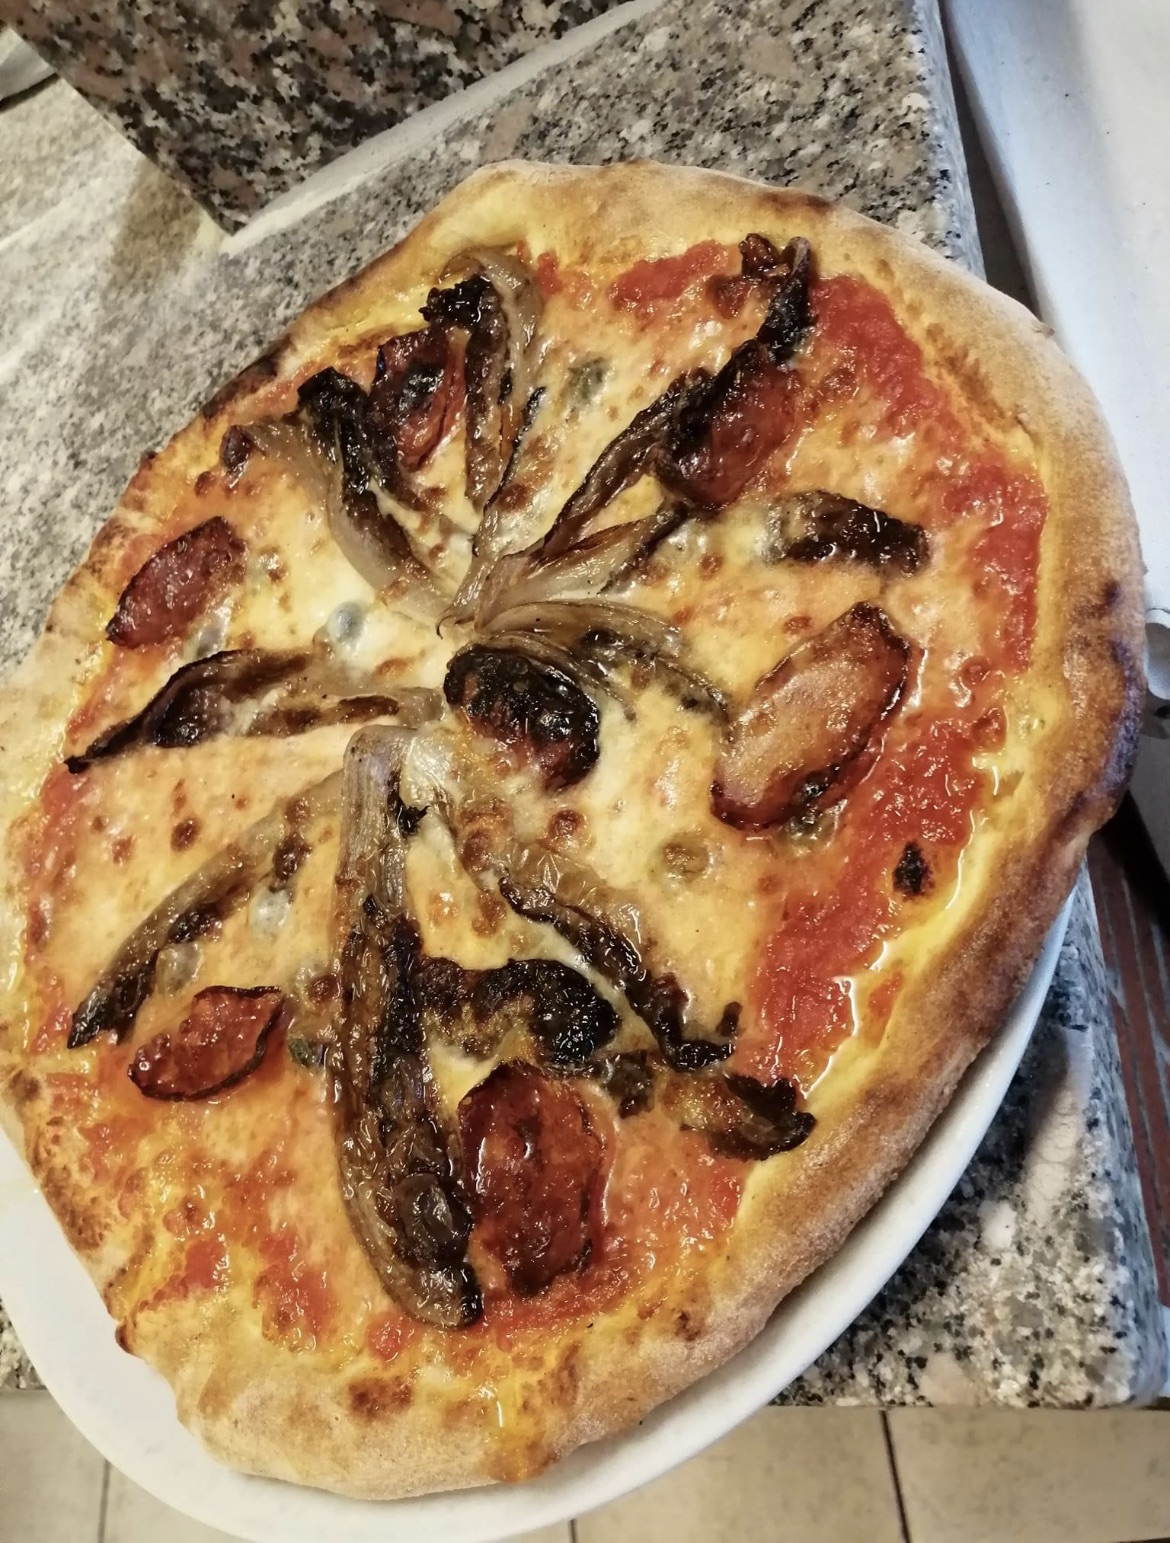 Grandioso al ristopizzeria Santa Lucia di Crema: le pizze speciale, beh hanno una dedica spciale…